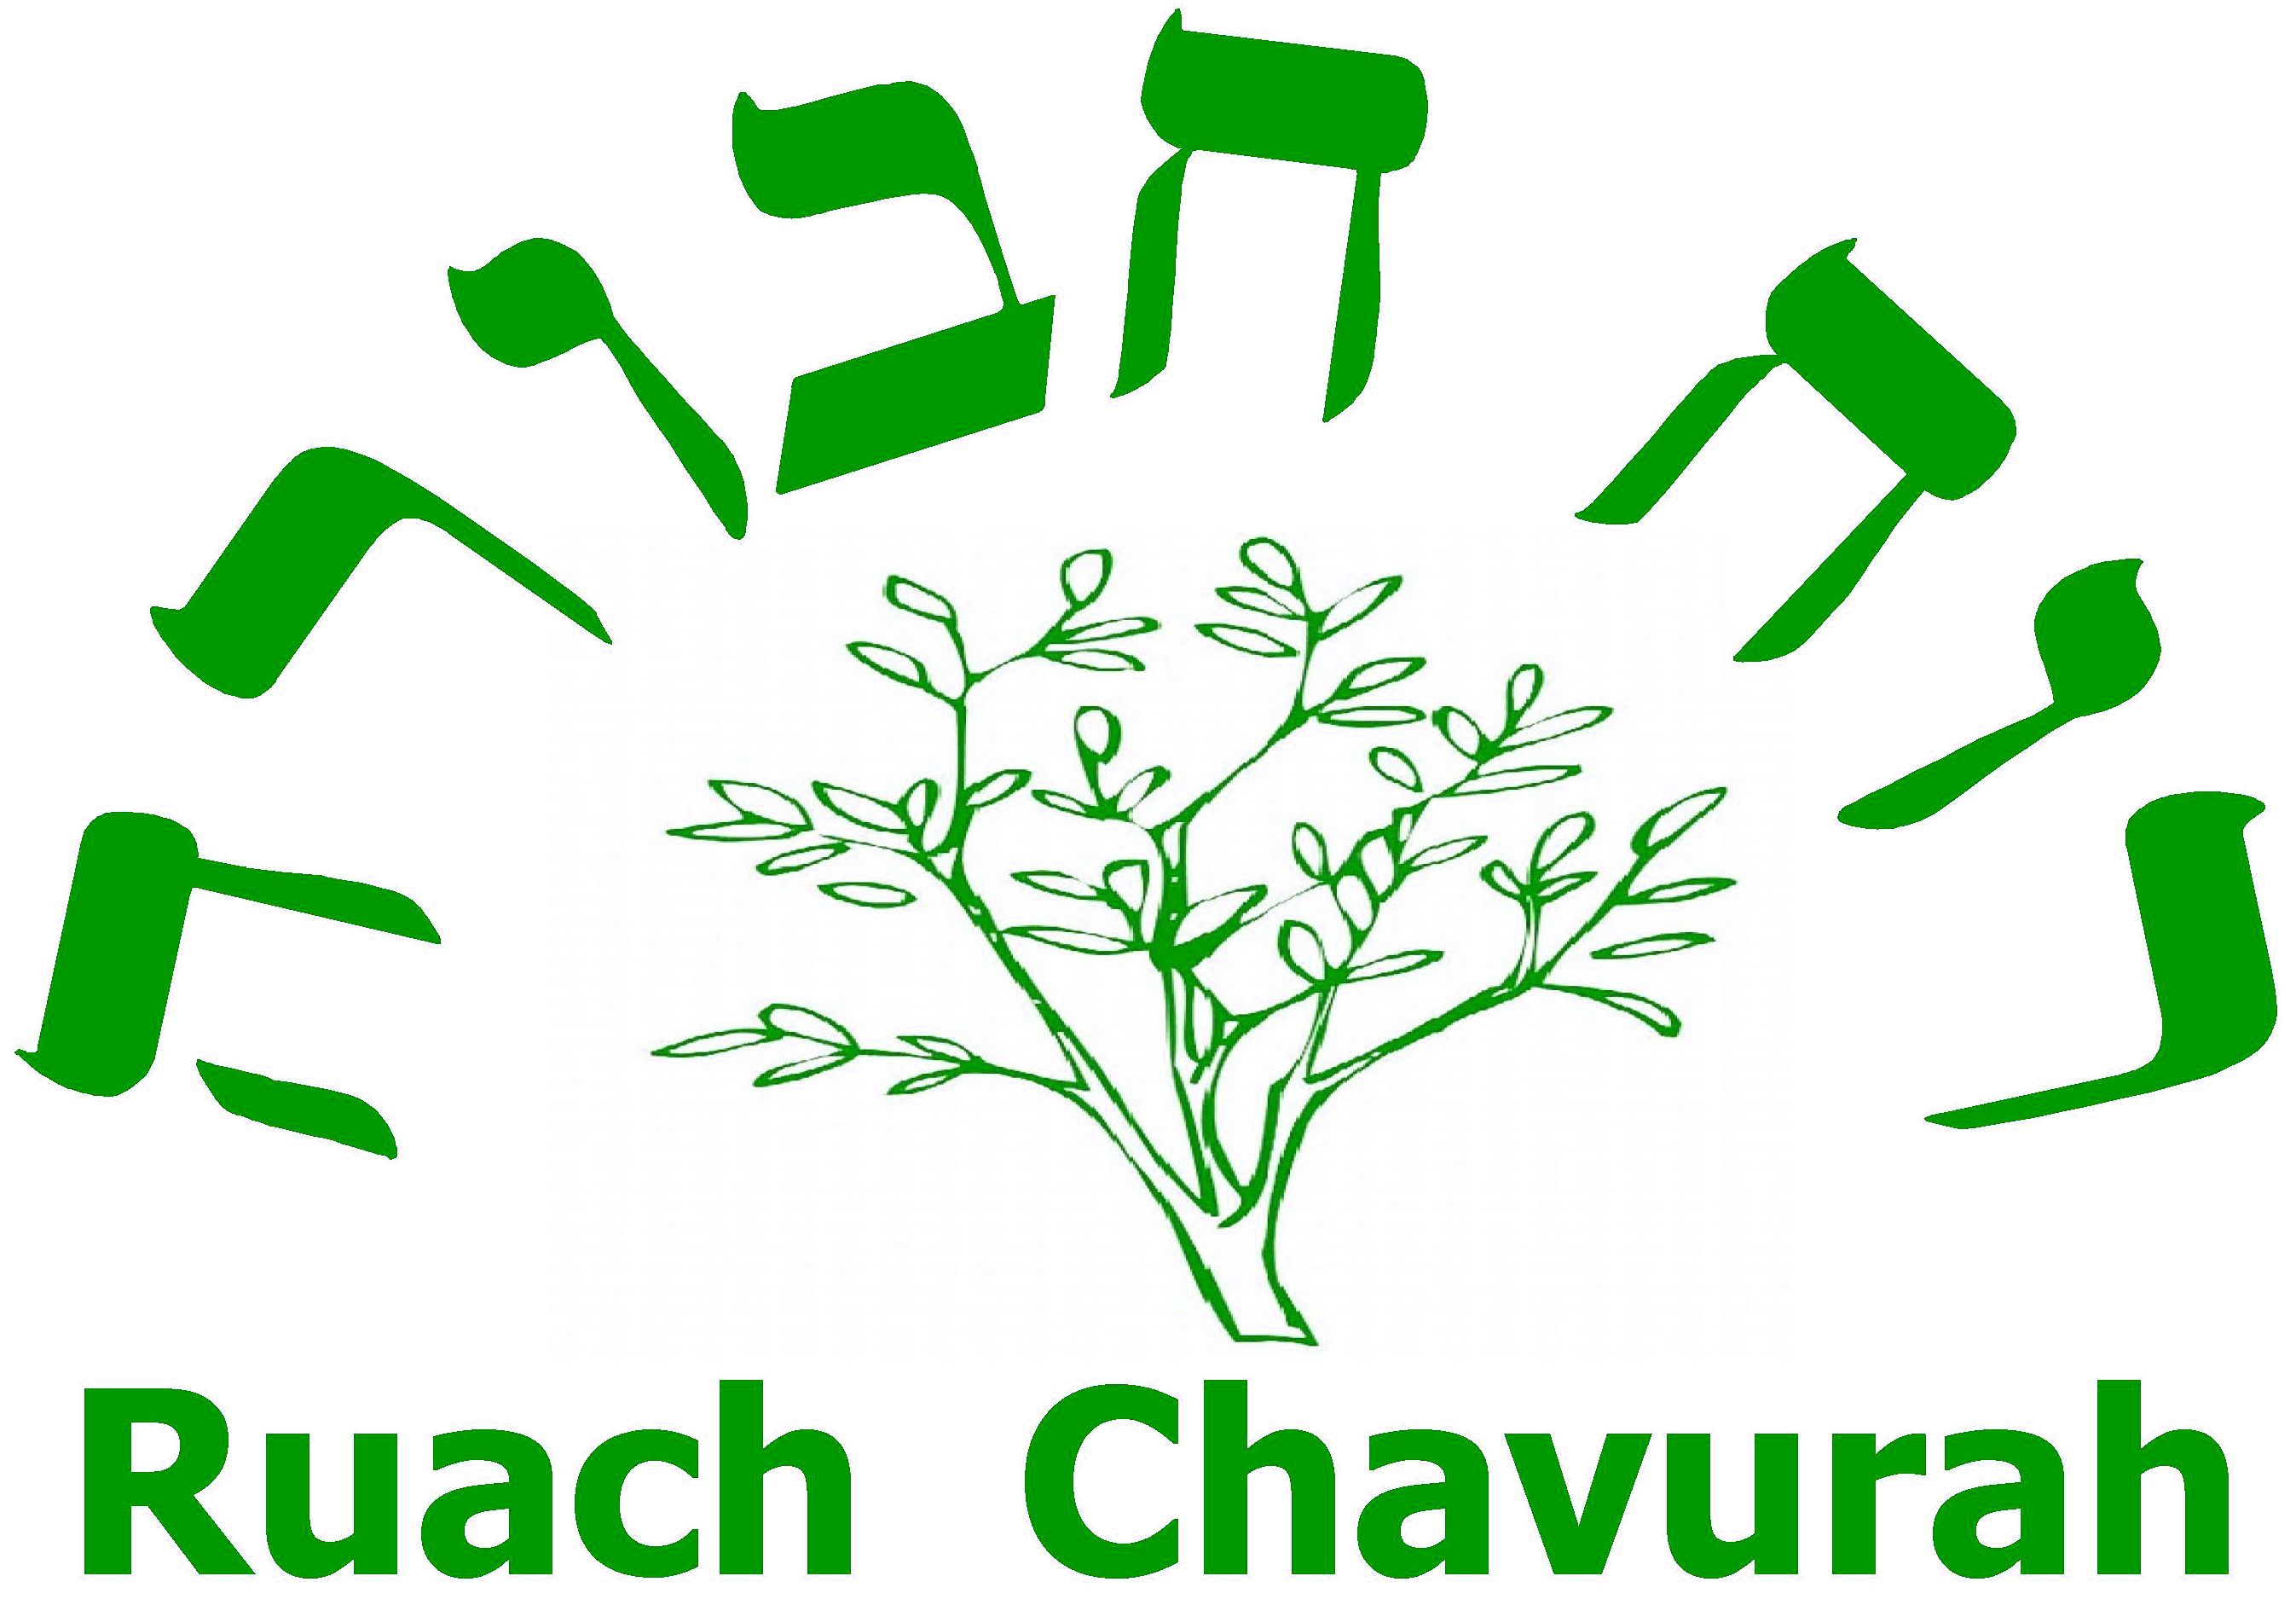 Ruach Chavurah logo